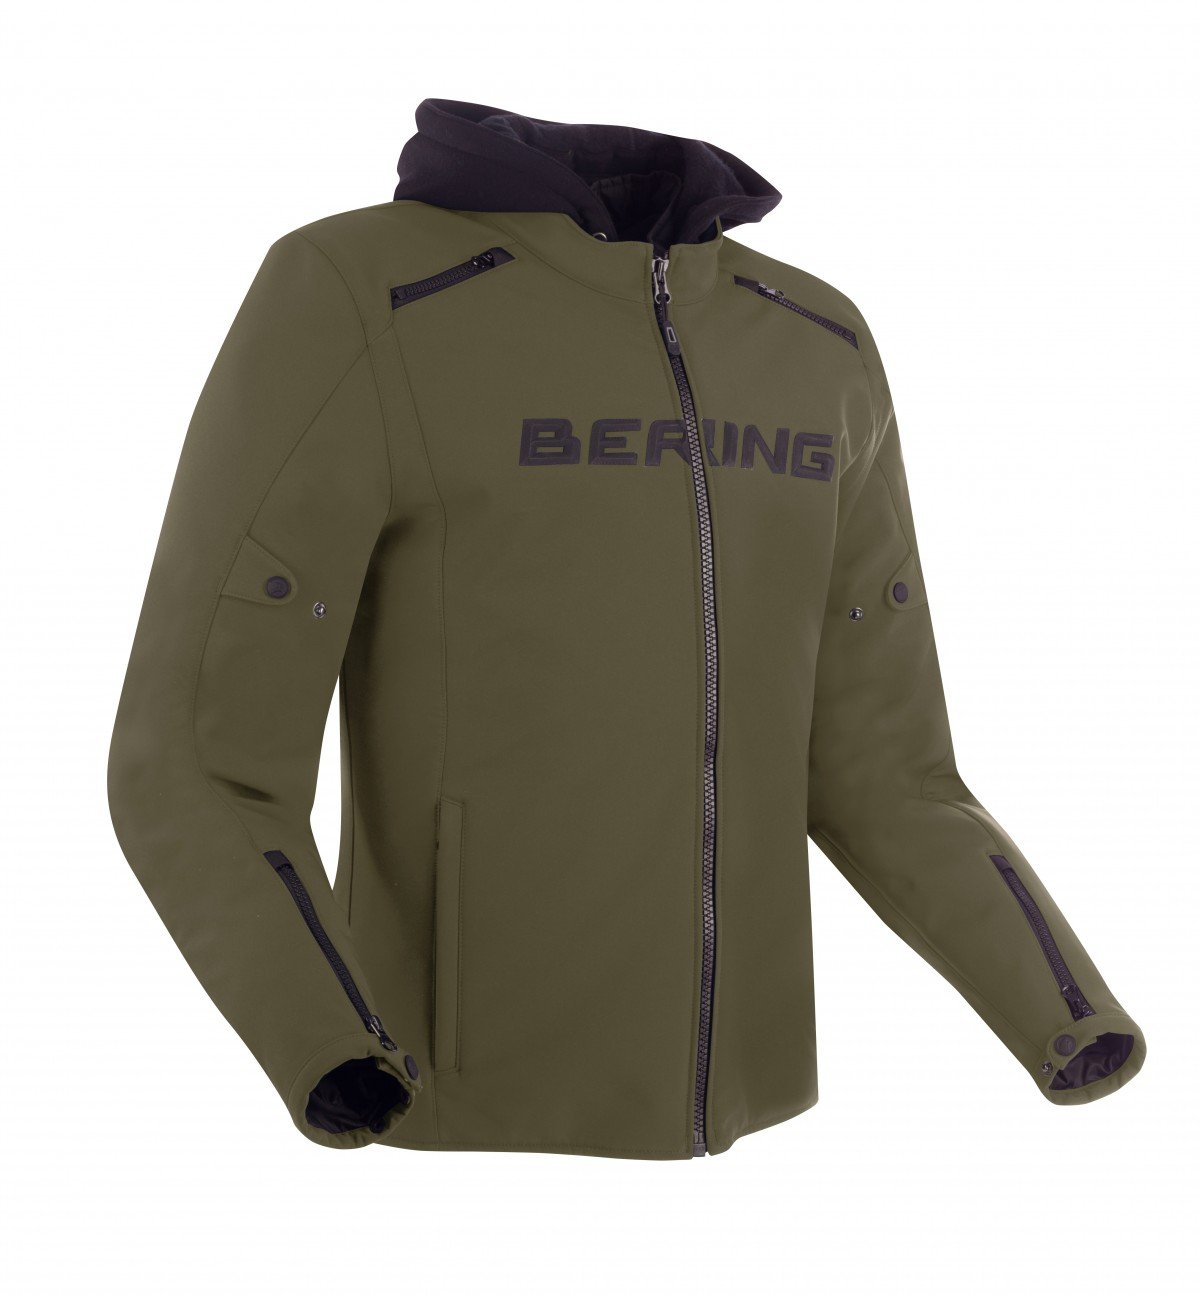 Image of Bering Elite Jacket Khaki Size XL ID 3660815170335